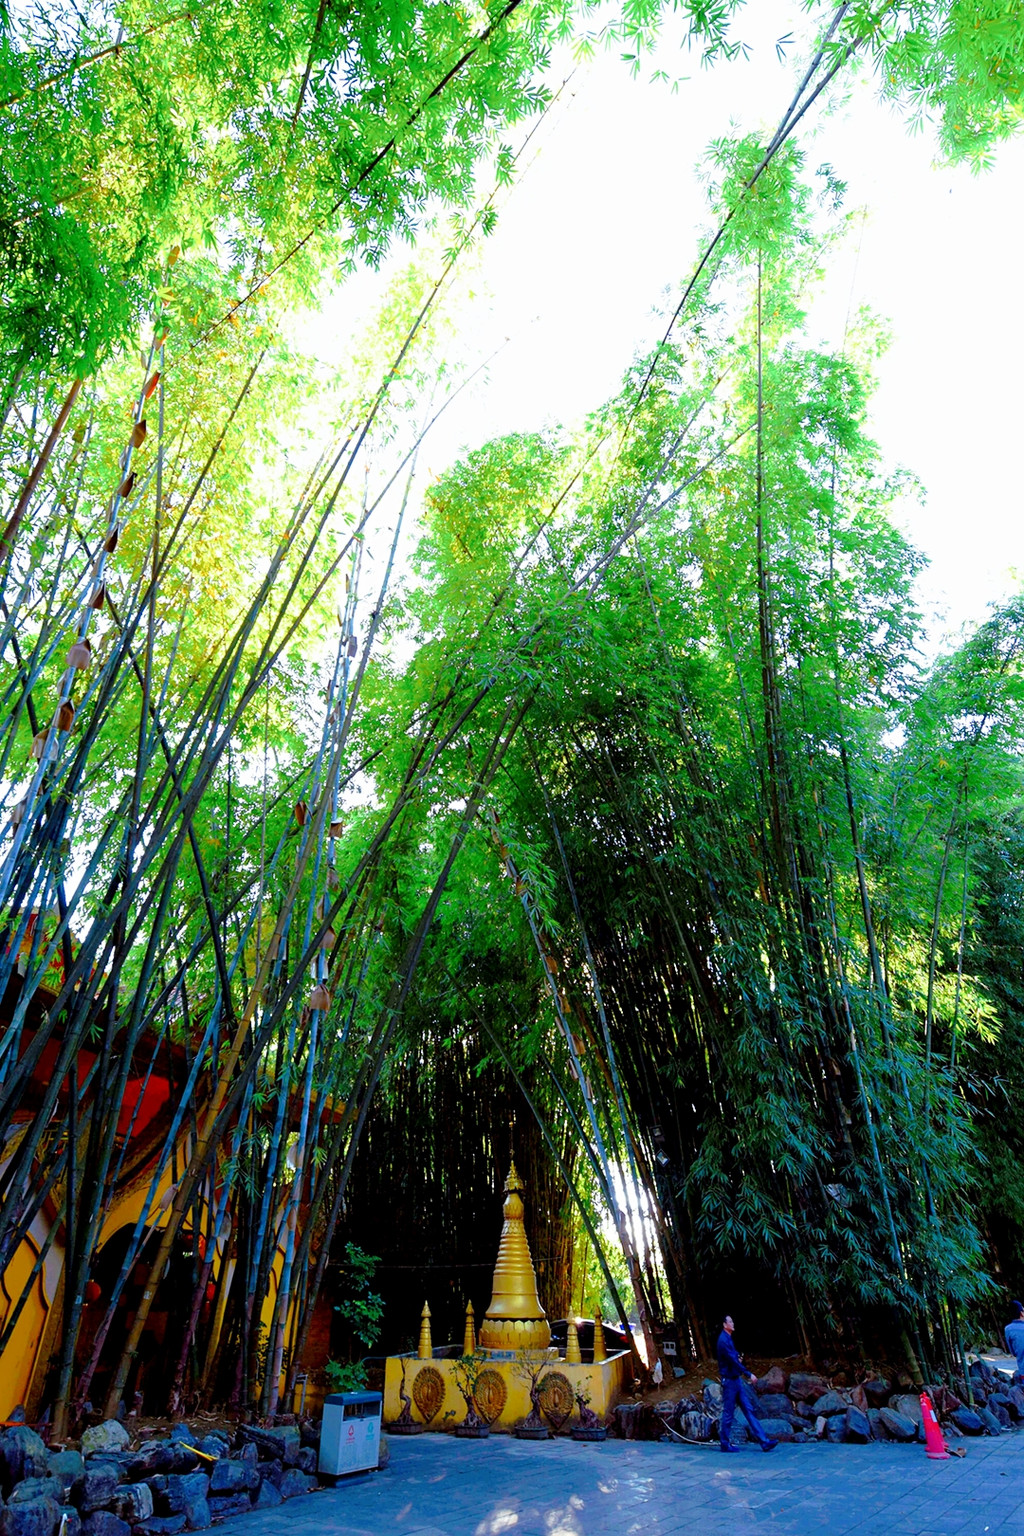 再往前行,是一大片美丽的凤尾竹林.